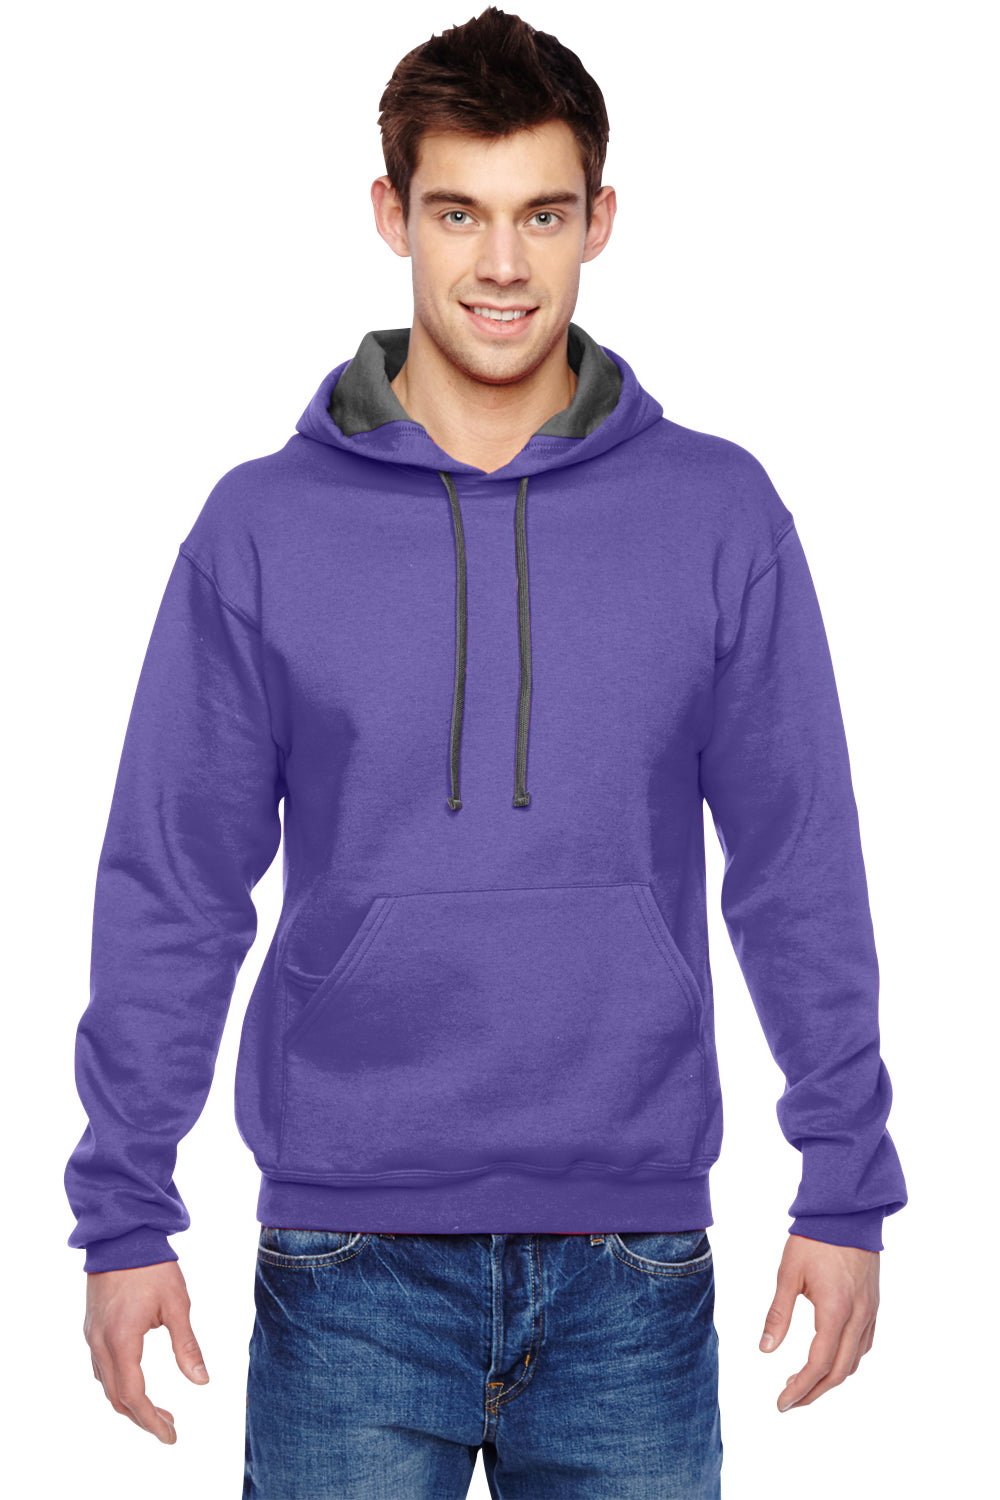 Fruit Of The Loom SF76R Mens Sofspun Hooded Sweatshirt Hoodie Purple Front